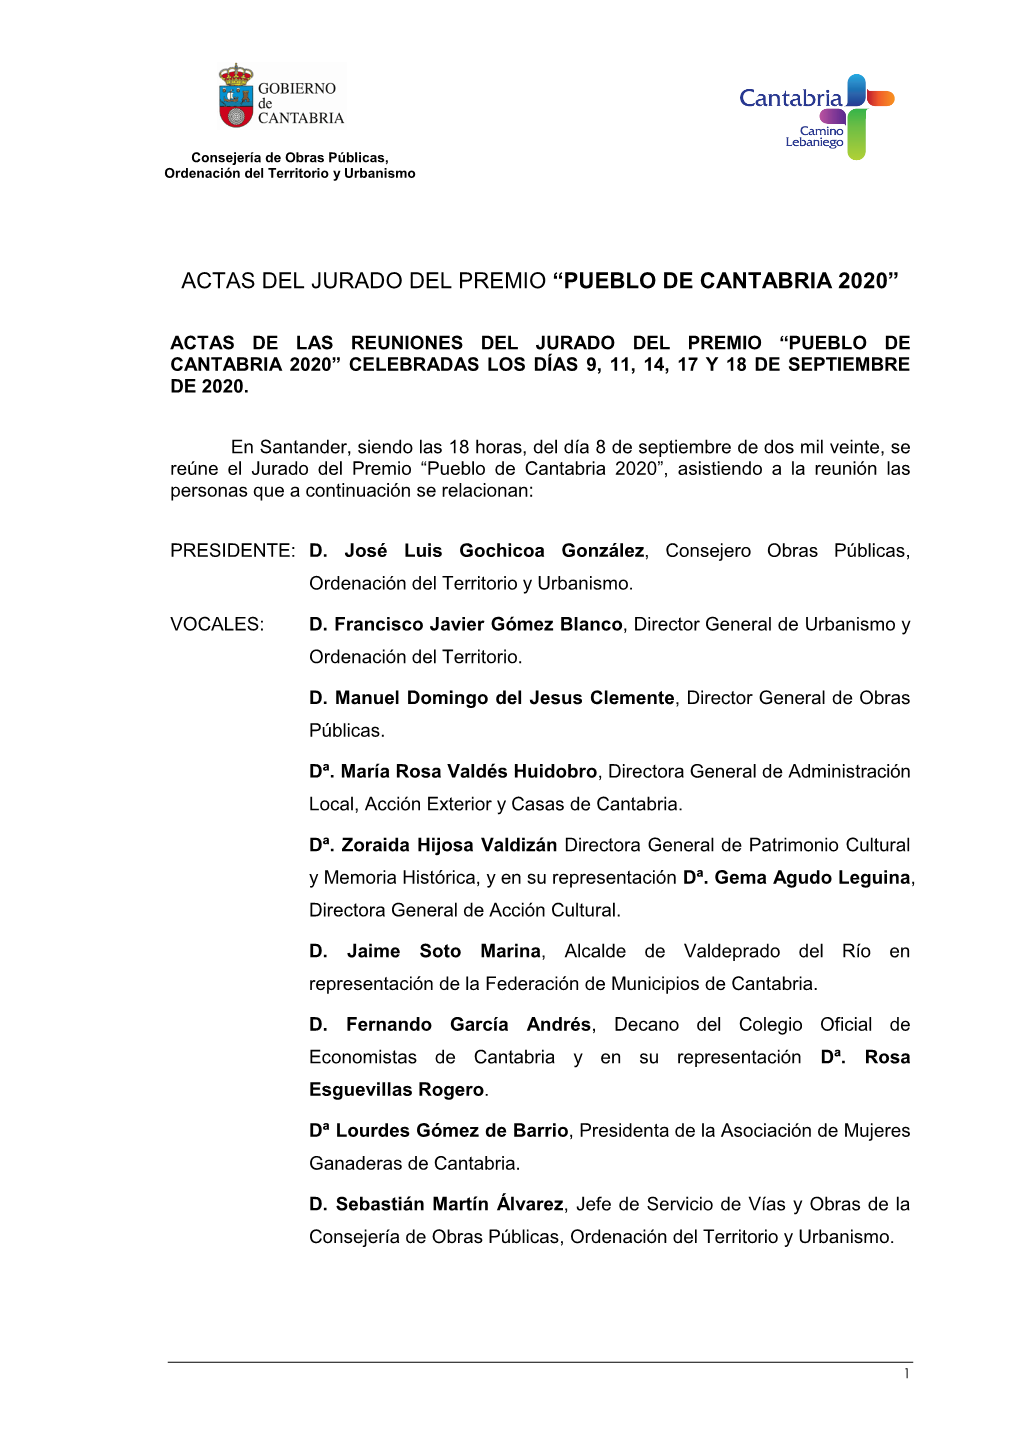 Actas Del Jurado Del Premio "Pueblo De Cantabria 2020"